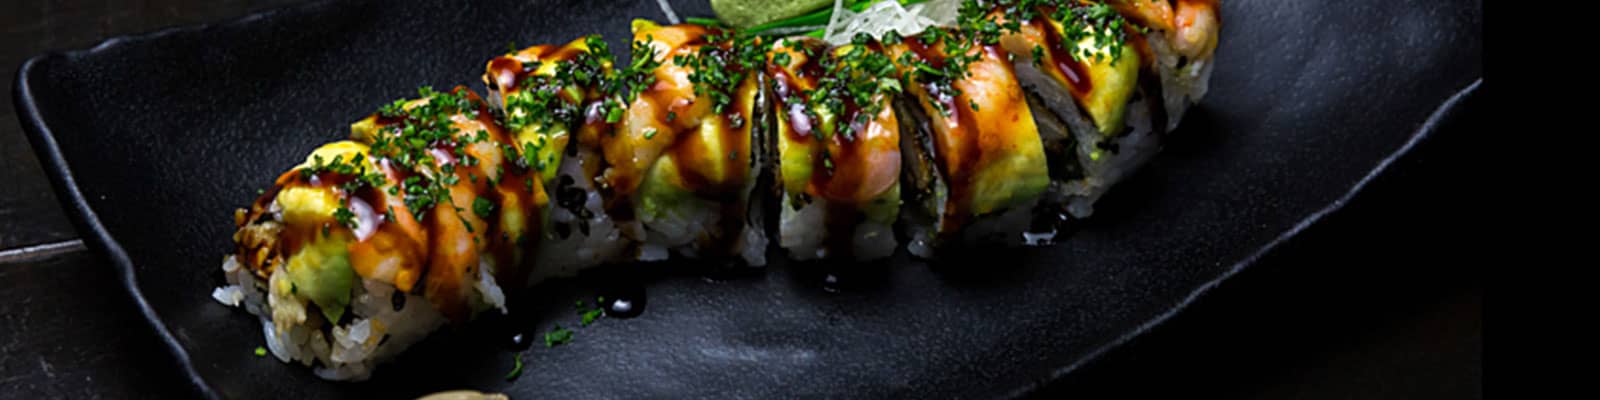 osaka-sushi-restaurant-bonaire-slider-image-2